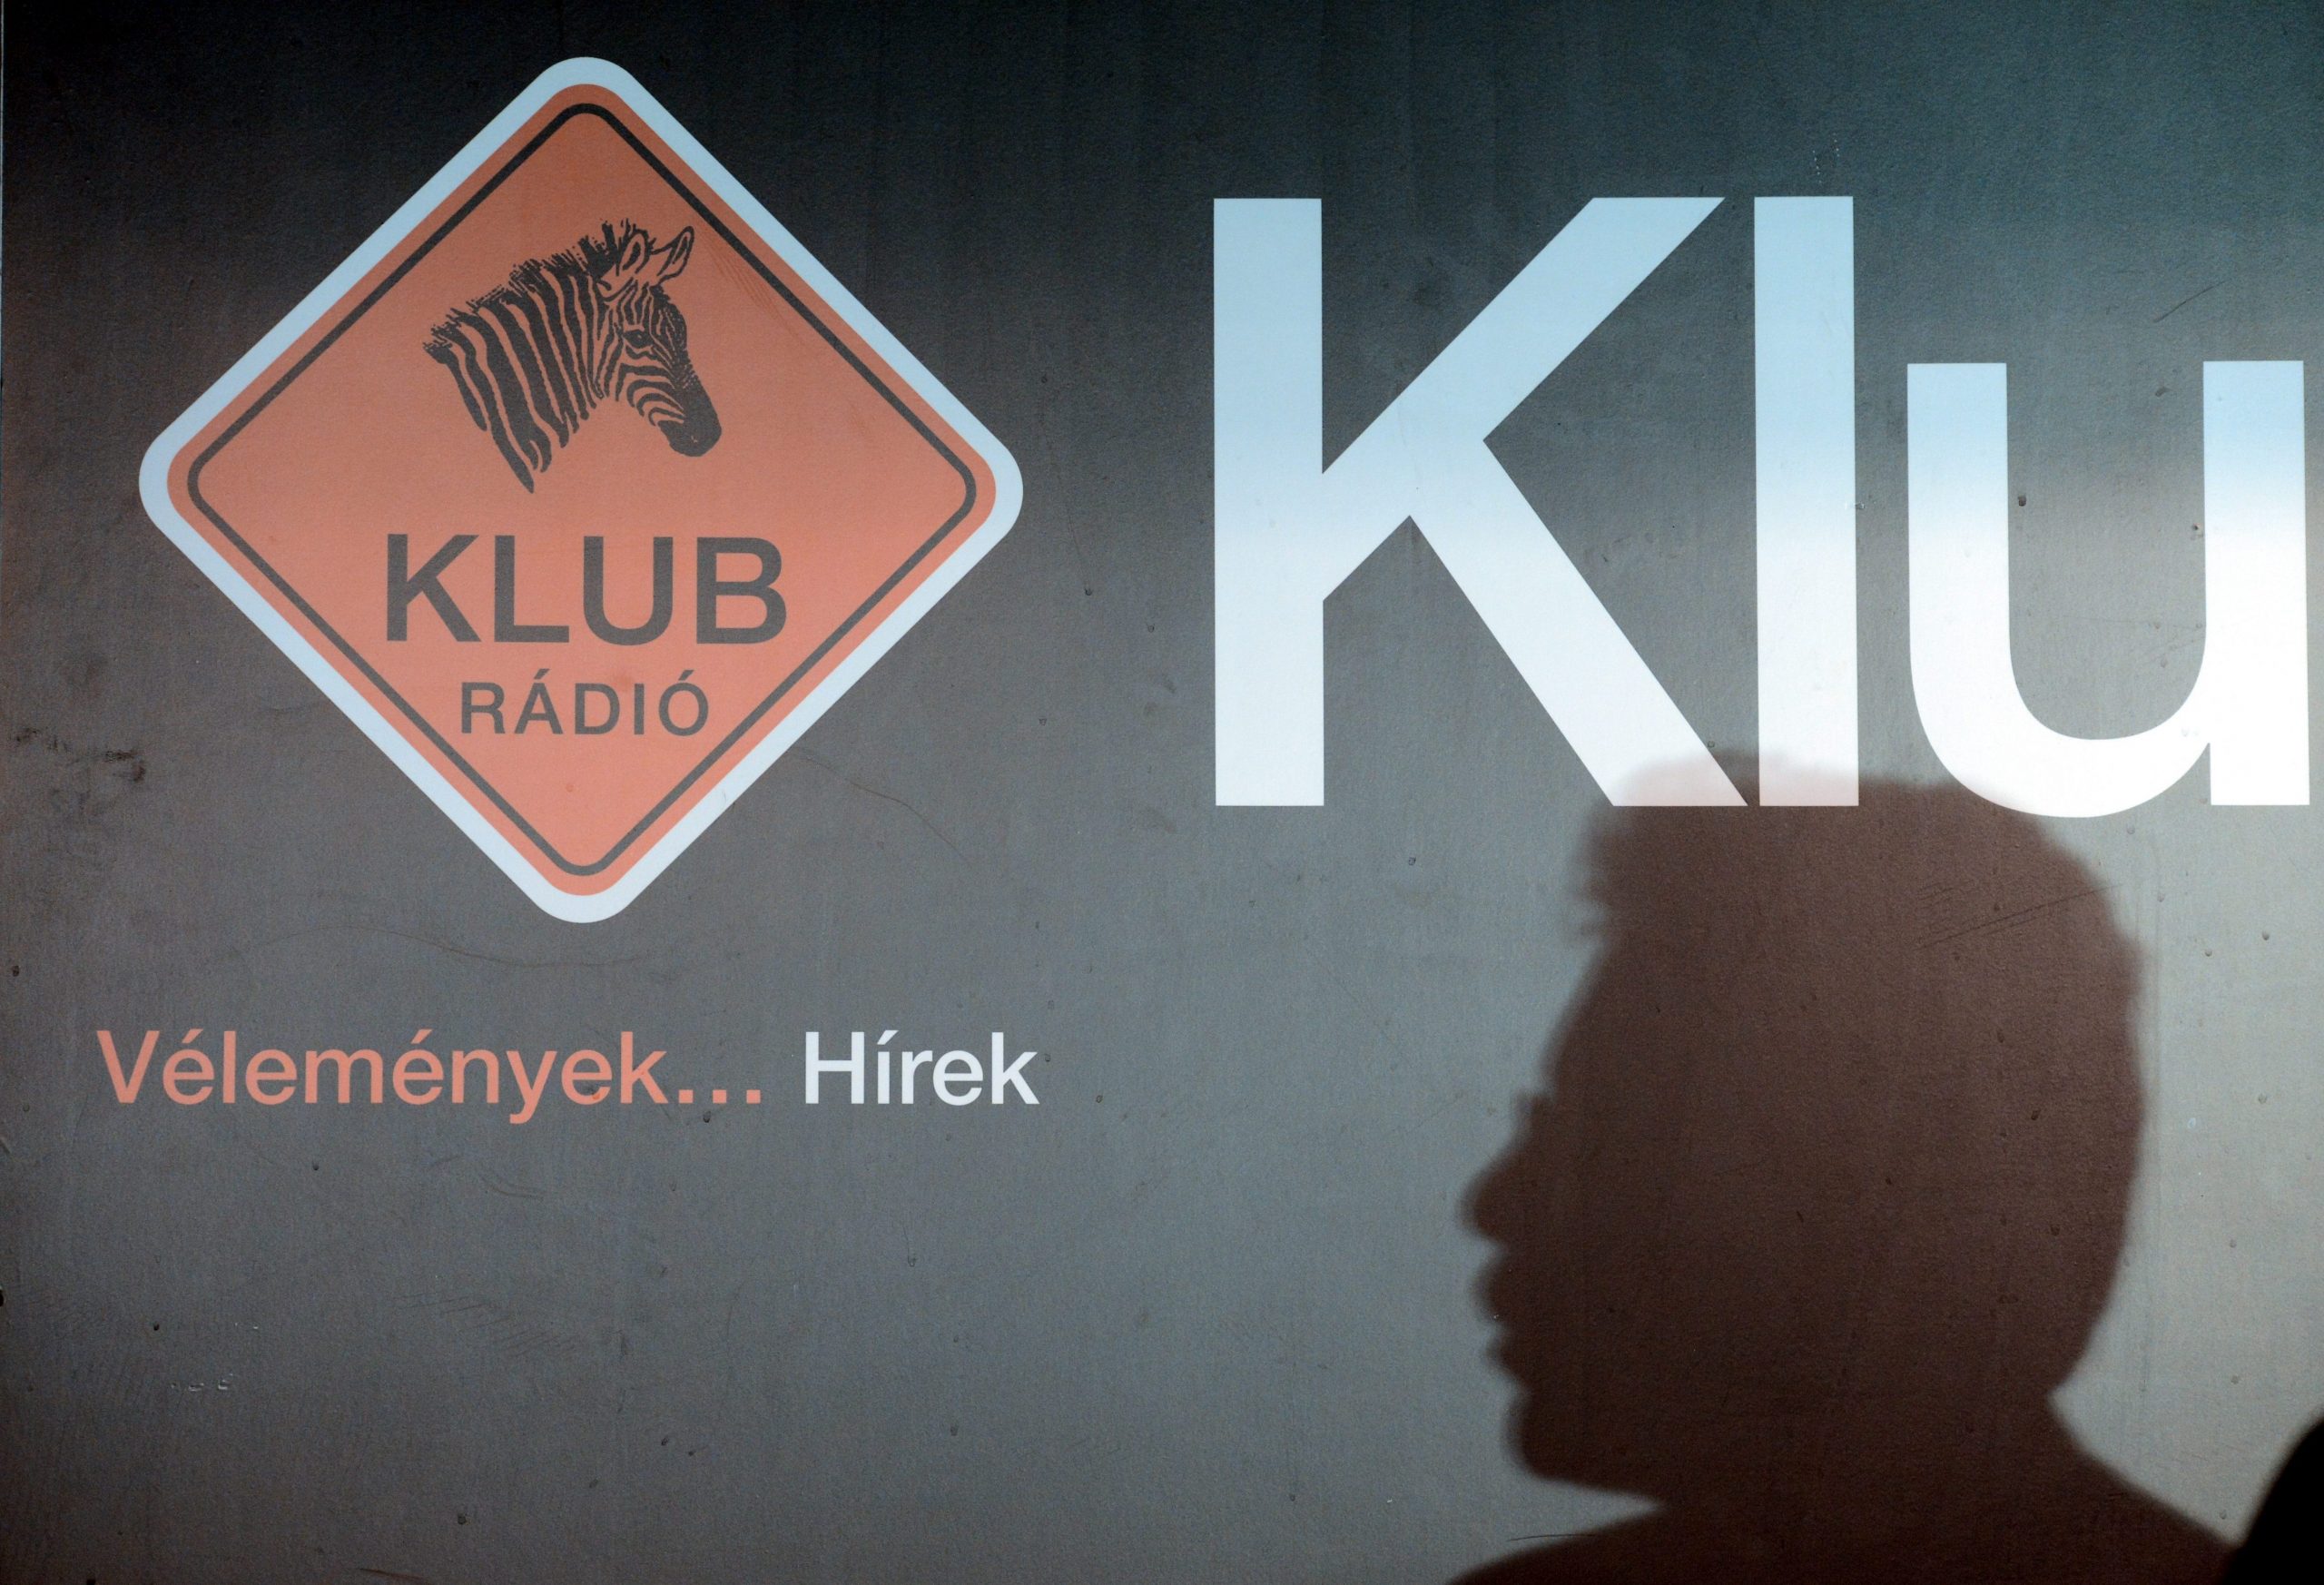 Regierungskritisches Klubradio verliert seine Frequenz